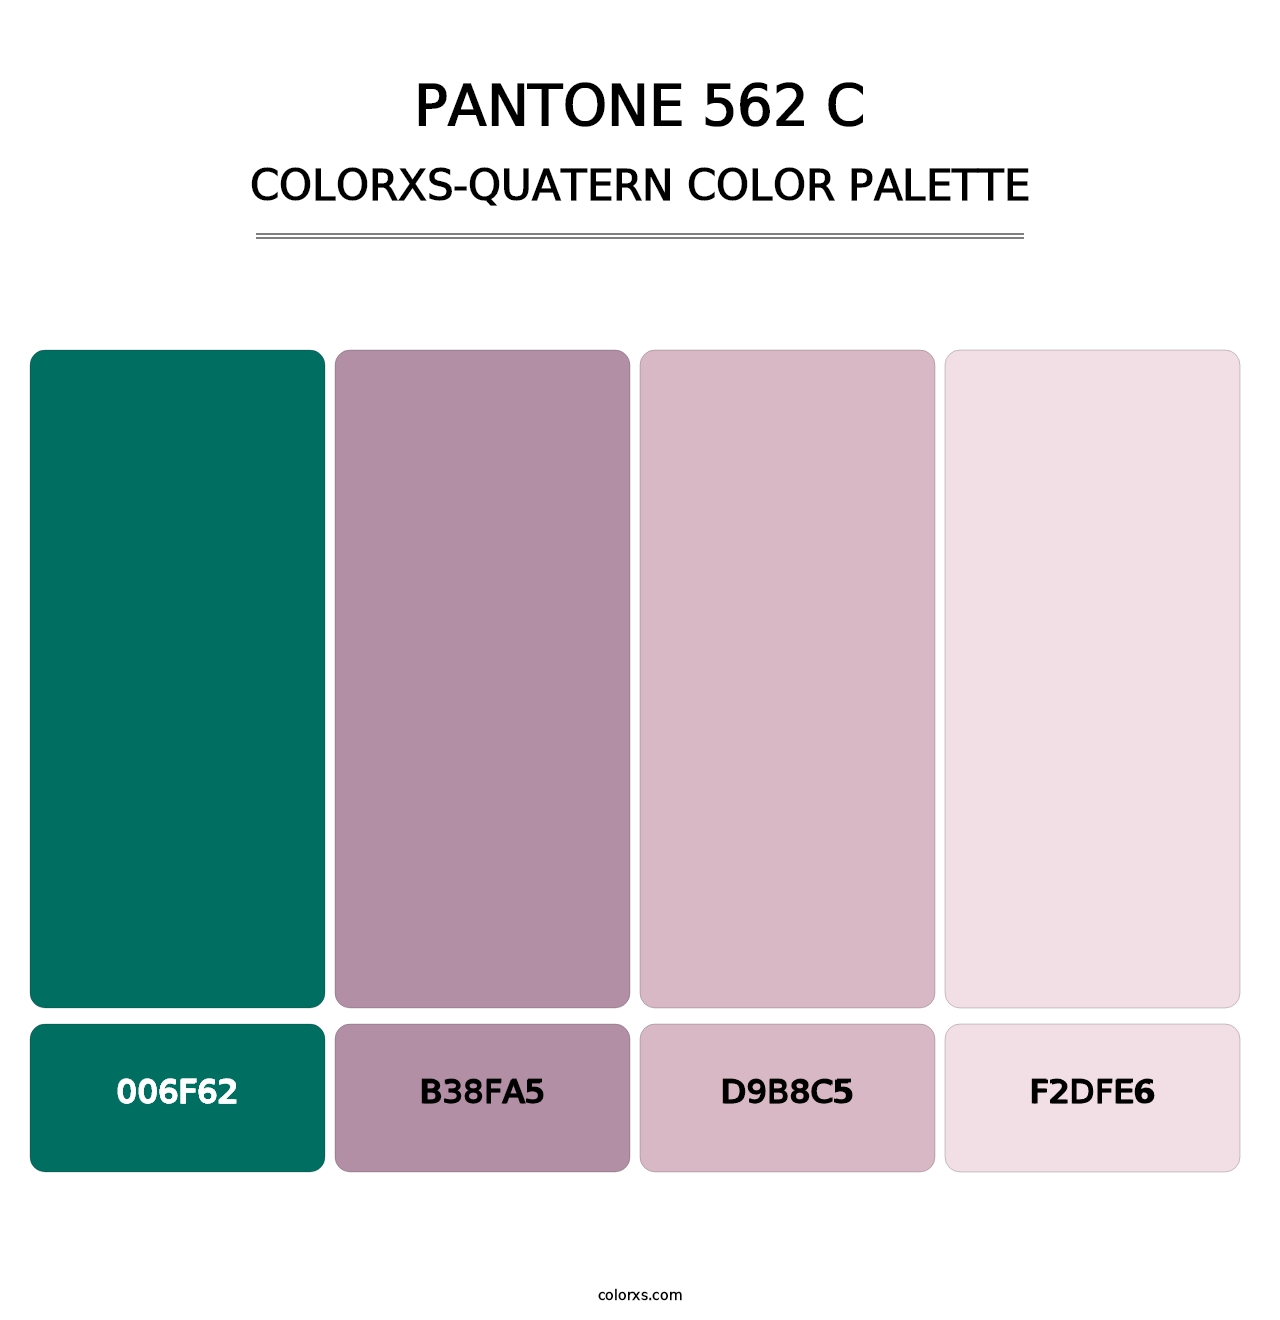 PANTONE 562 C - Colorxs Quatern Palette